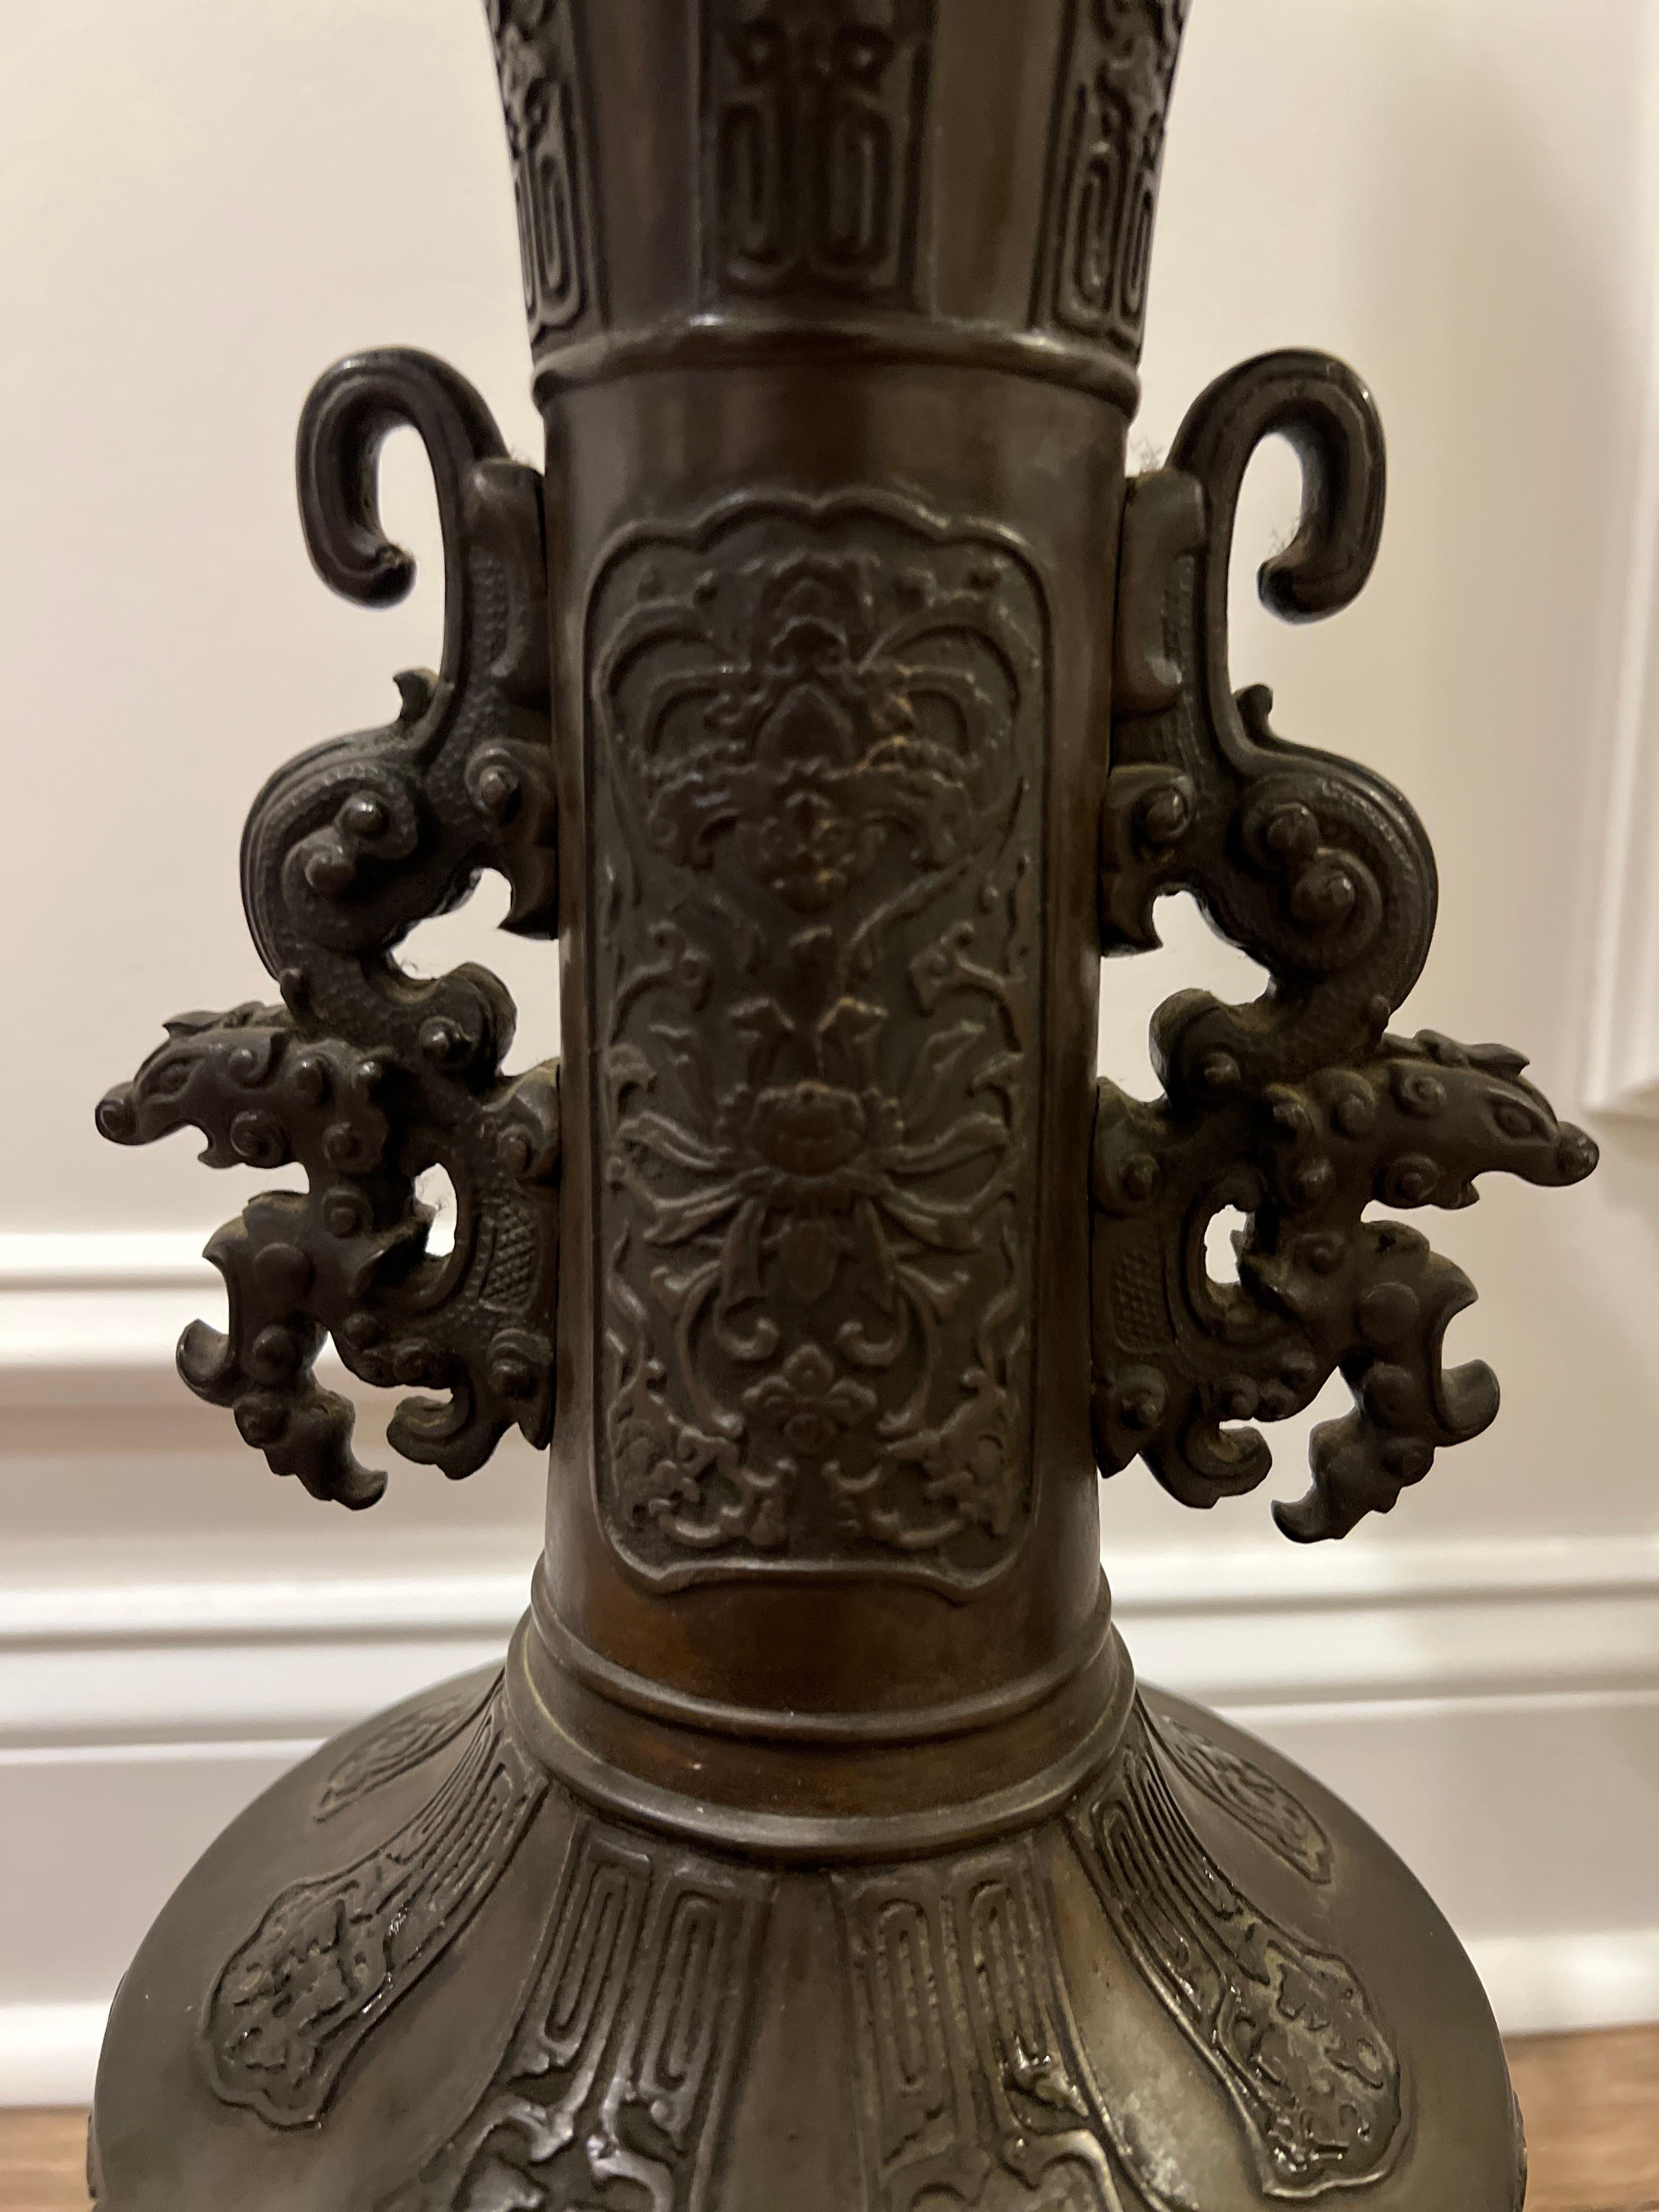 Japanisch, um 1900.

Ein Paar antiker japanischer Bronze-Tischlampen. Die Lampen haben einen detaillierten Korpus mit aufgesetzten Lotusblüten- und Vogelmotiven in der Mitte, traditionelle japanische Motive im gesamten Korpus und hochwertige